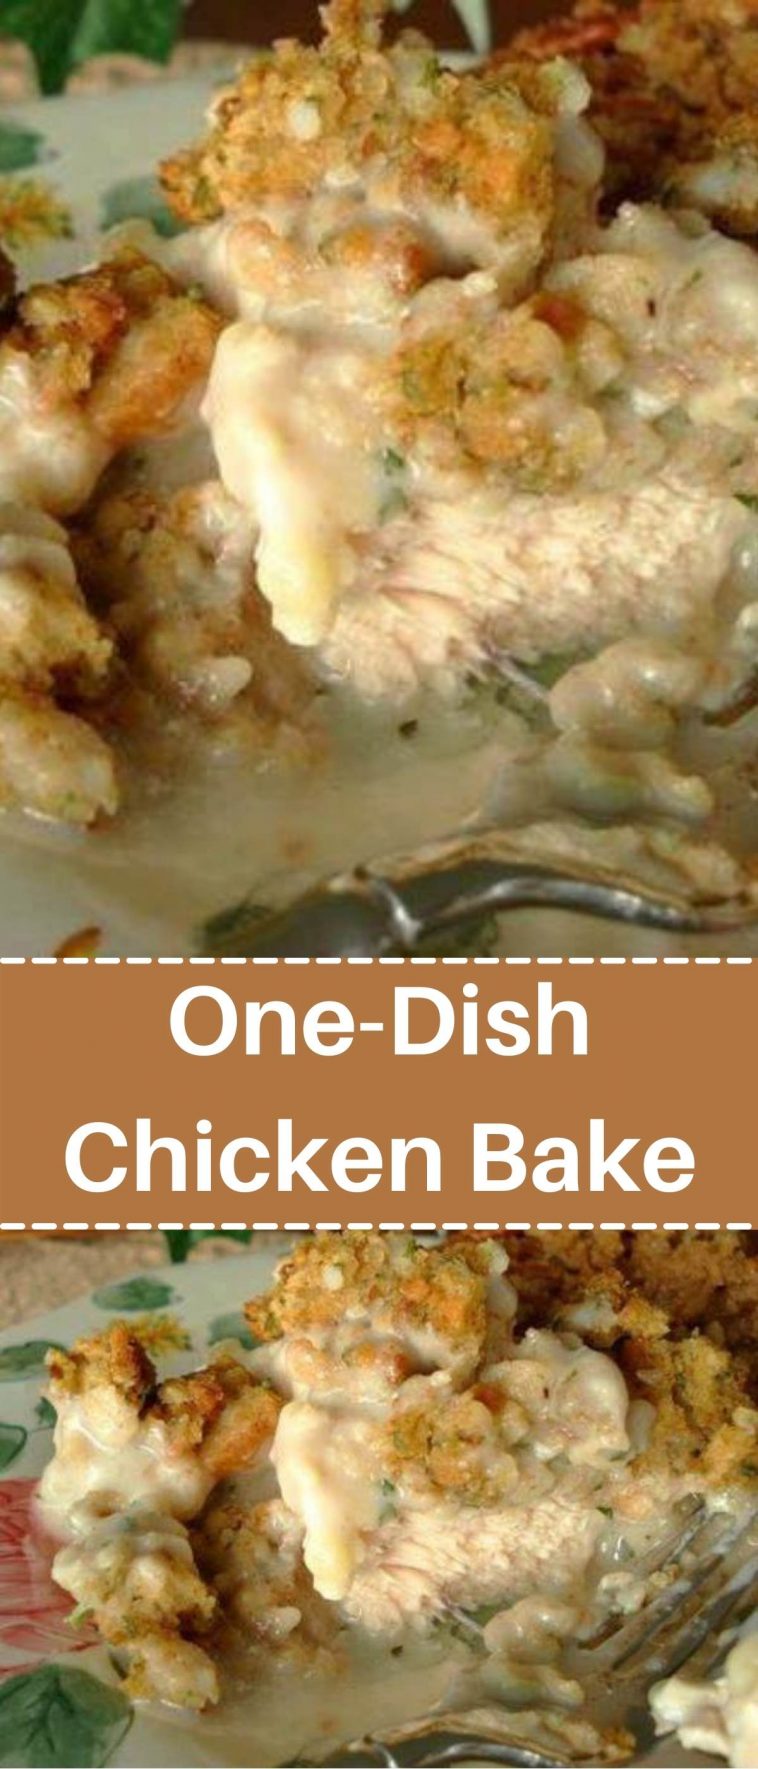 One-Dish Chicken Bake